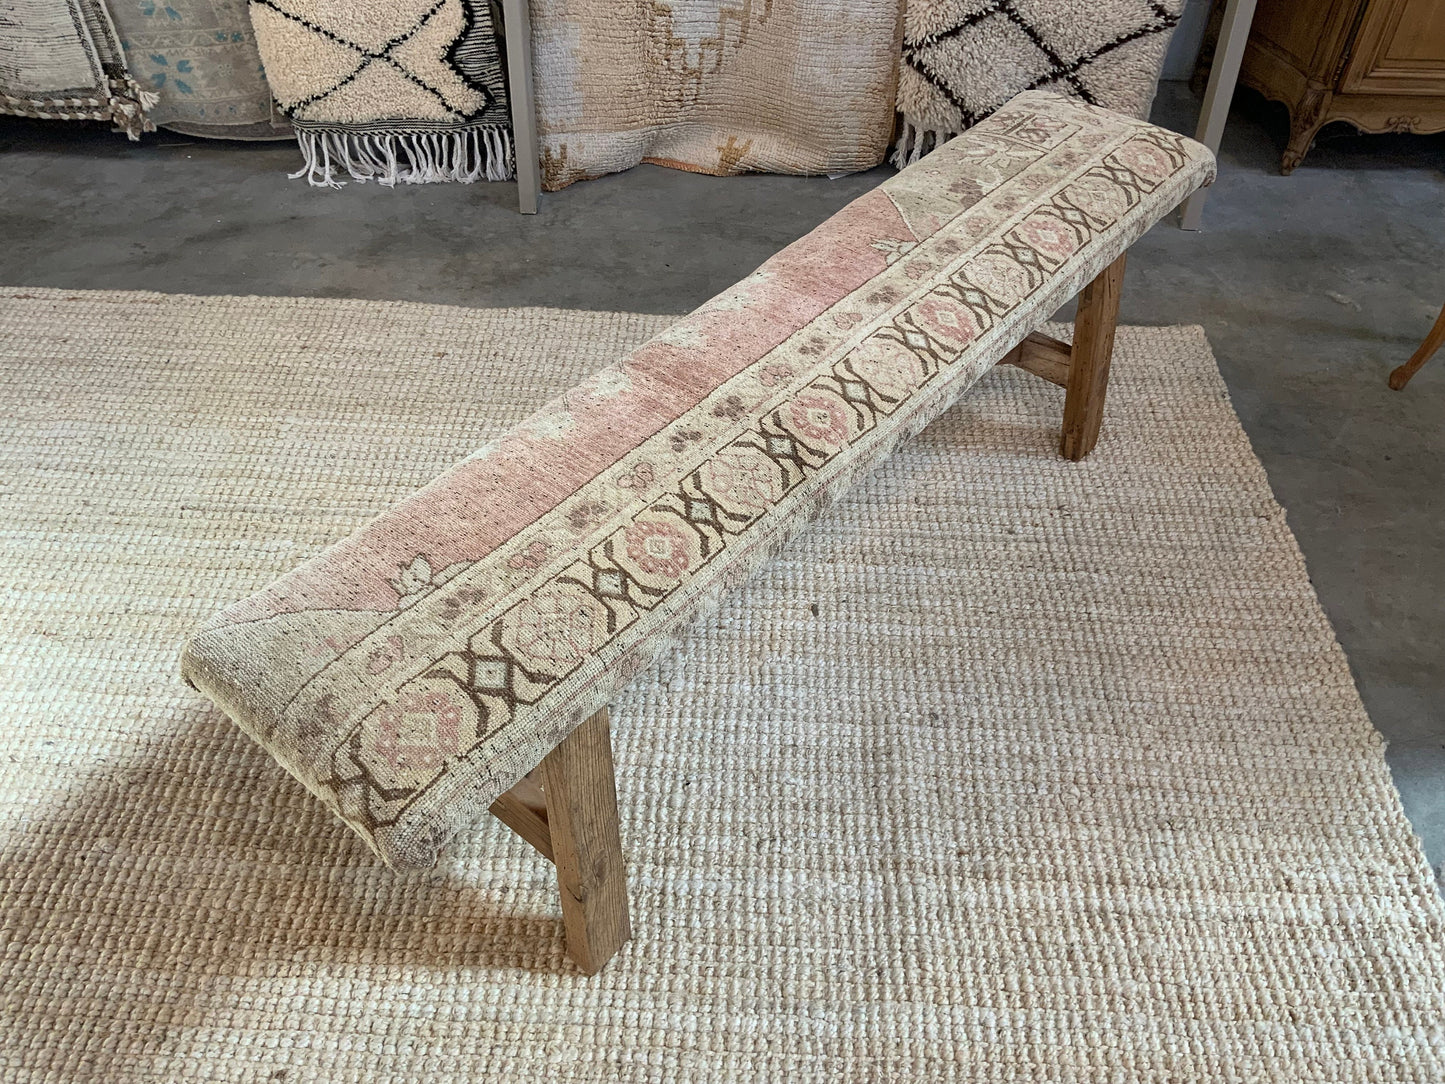 LG - Vintage Rug Upholstered Wood Bench